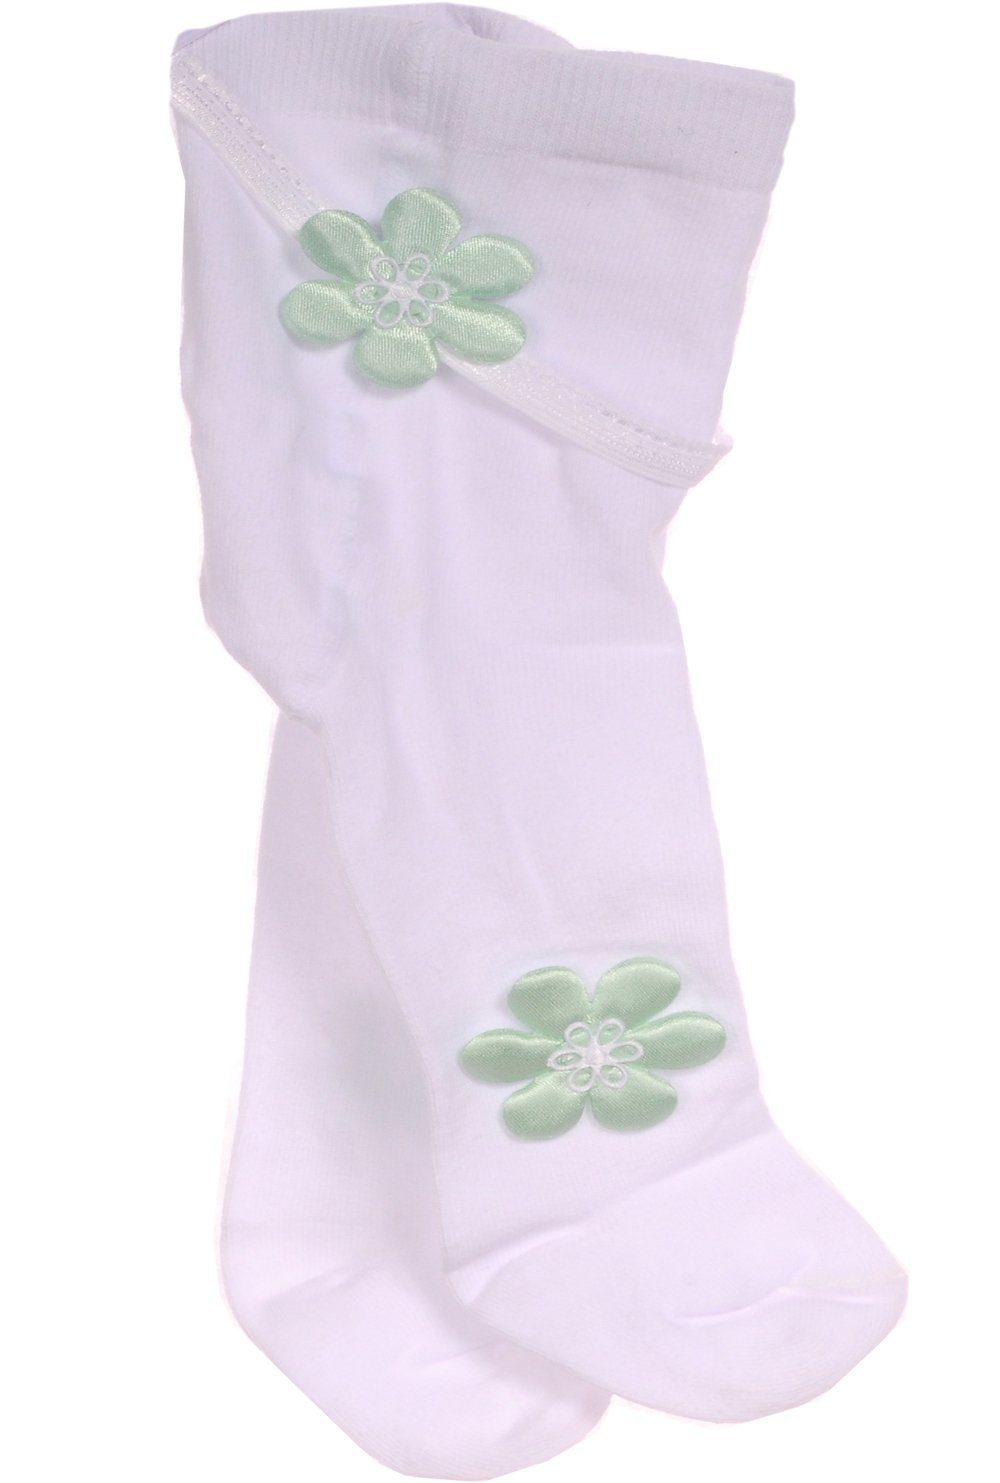 La Bortini Strumpfhose Baby 56 grün Stirnband Blumen Strumpfhose Weiß 50 62 Weiß und Set